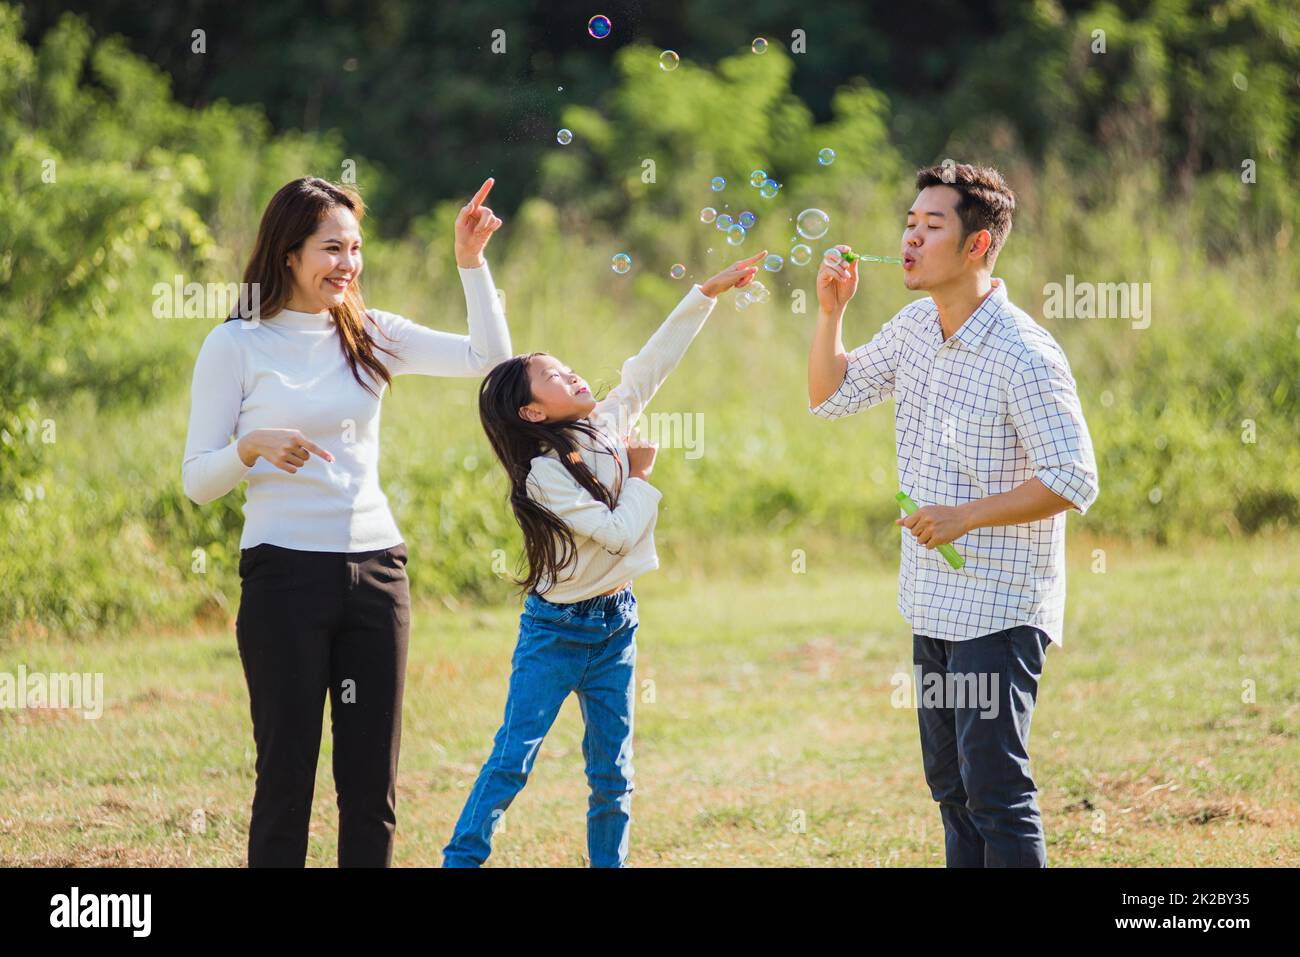 La mère asiatique, le père et la petite fille qui s'amusent ensemble jouent des bulles de savon soufflantes dans le parc Banque D'Images